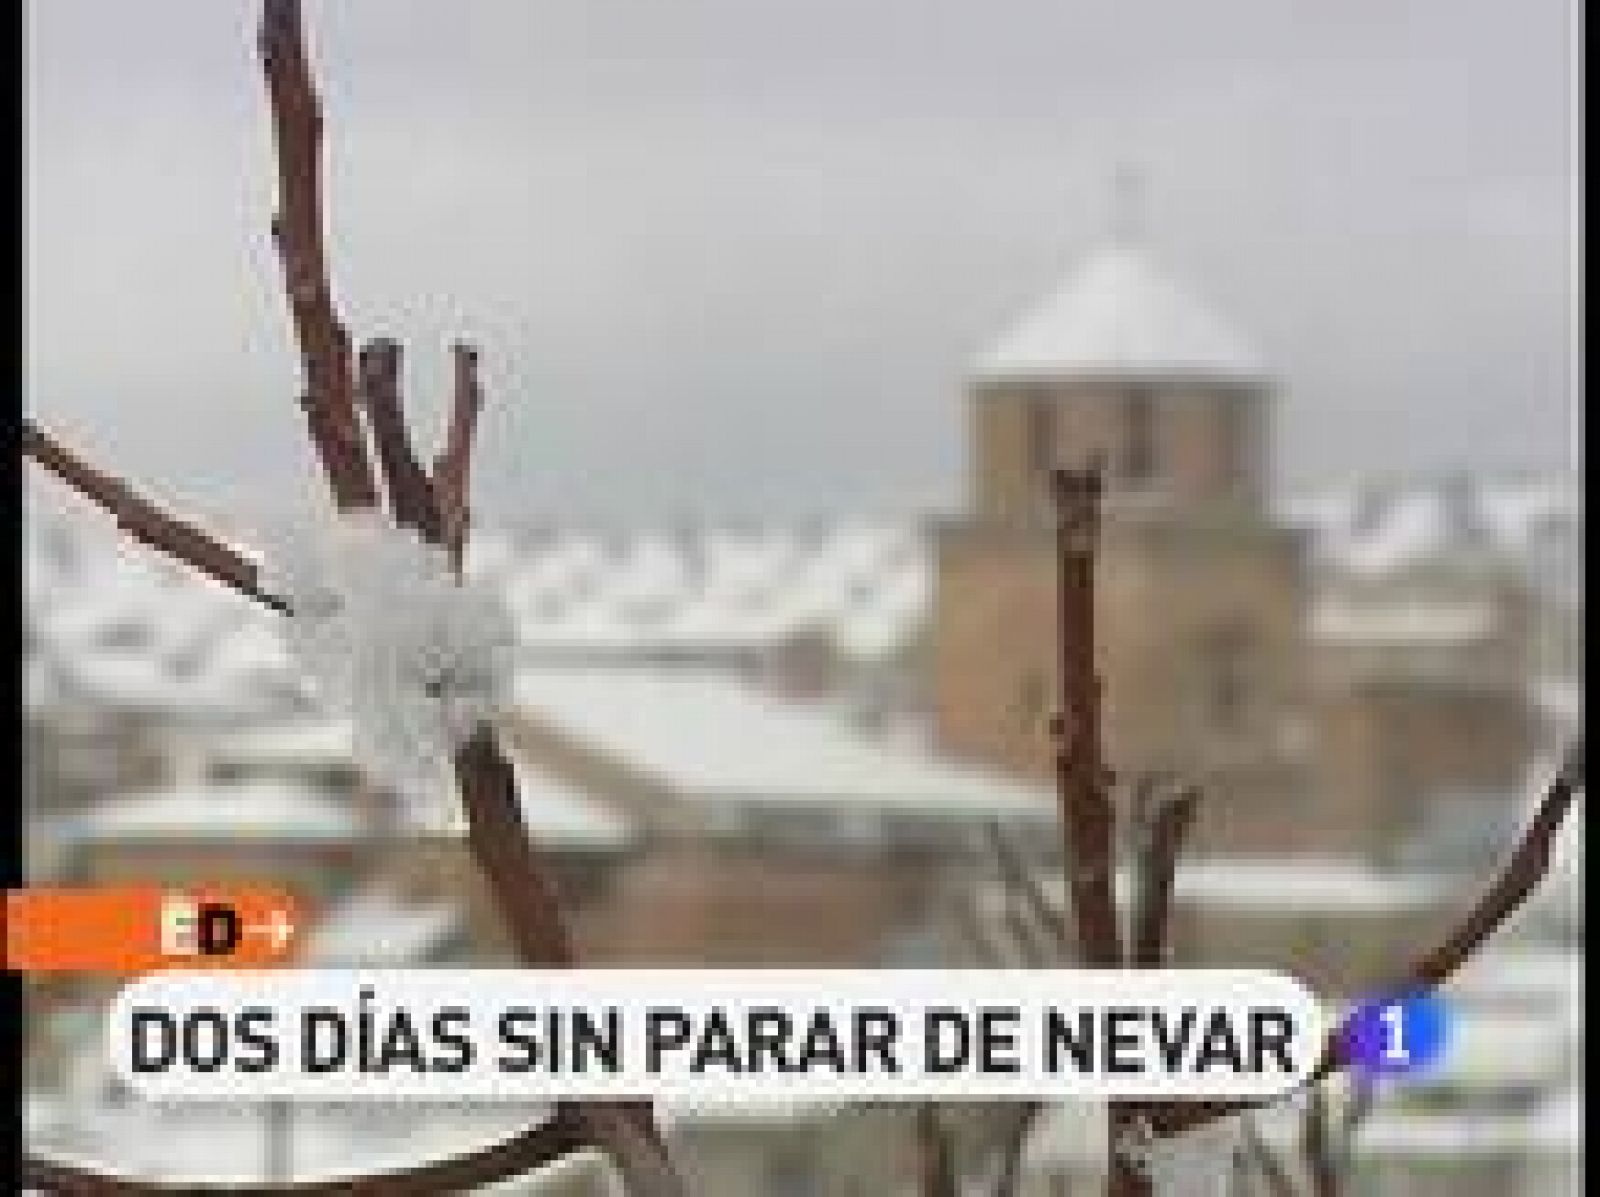 Es el invierno más blanco de los últimos años en Sierra Mágina (Jaén). Y el pueblo, envuelto en nieve, un regalo para la vista. Dos días de intensas nevadas han dado paso a un día soleado que nos ofrece las más bellas y blancas postales.